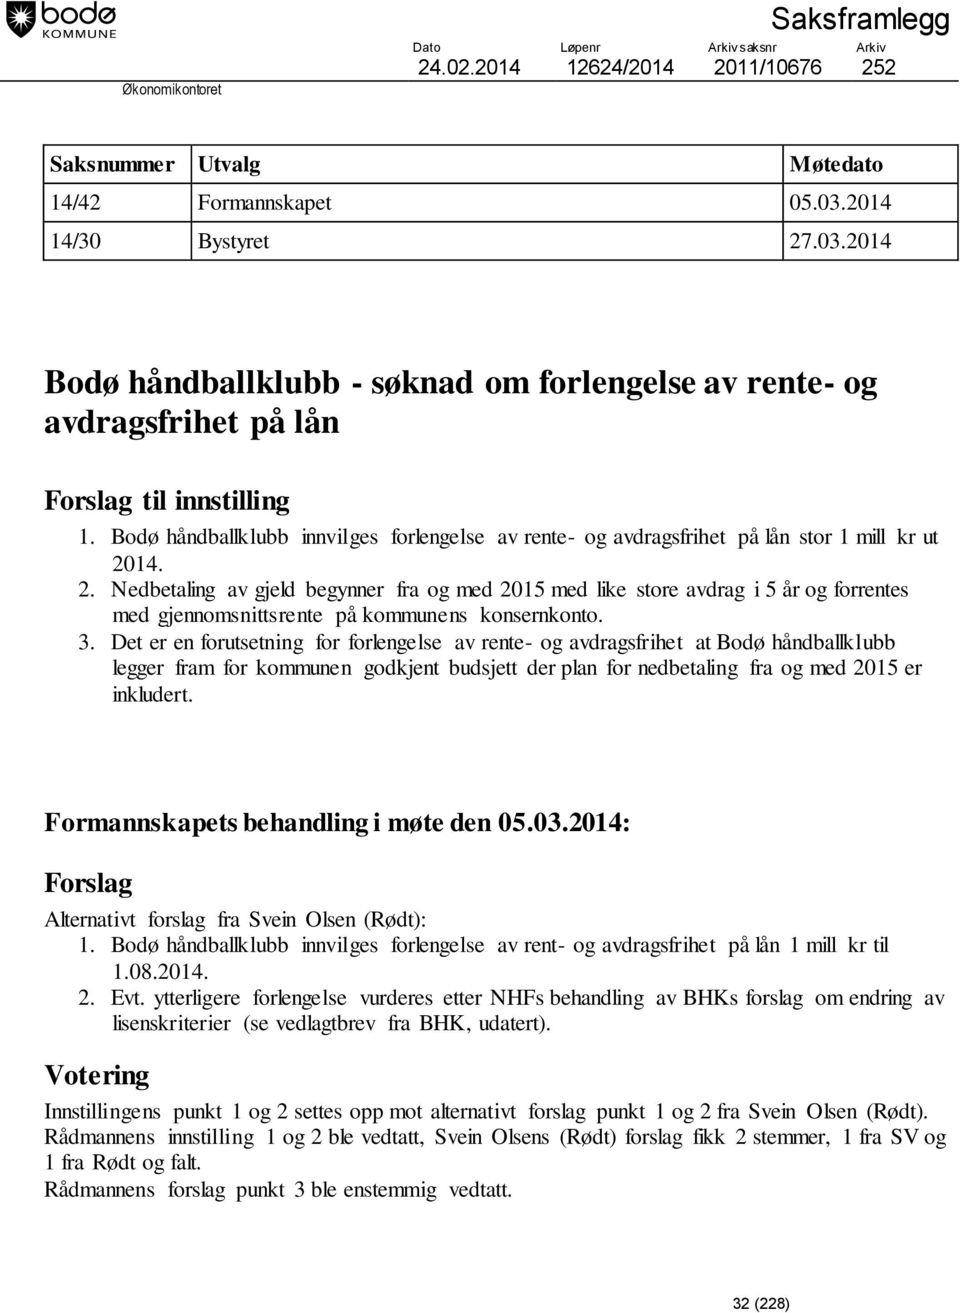 Bodø håndballklubb innvilges forlengelse av rente- og avdragsfrihet på lån stor 1 mill kr ut 20